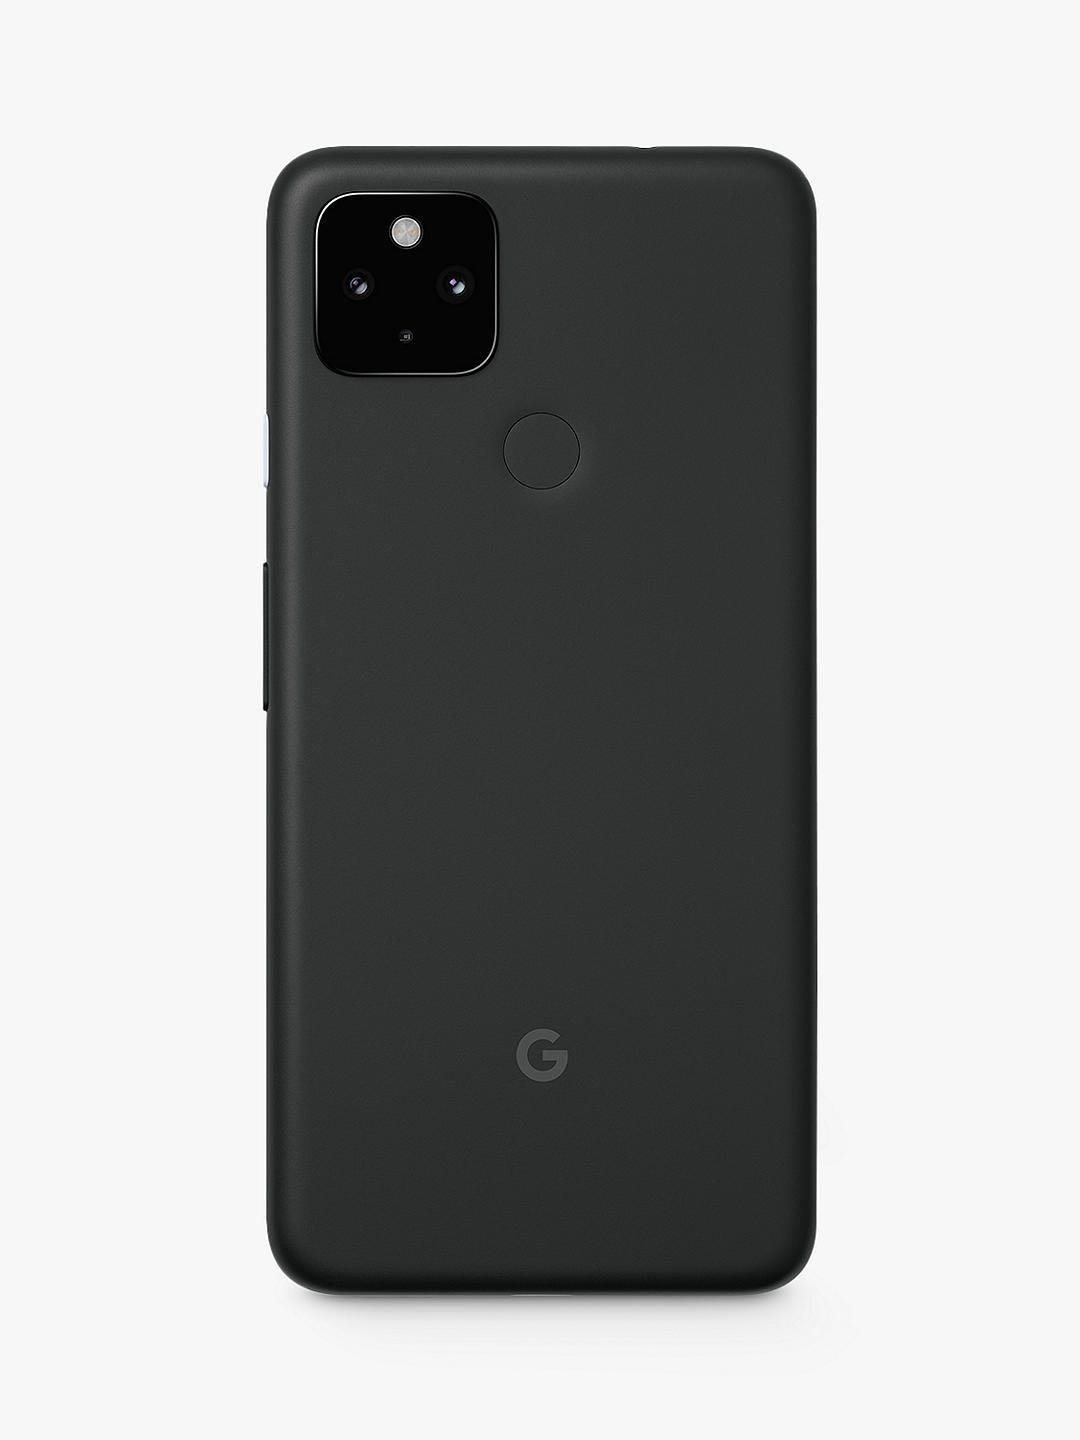 Google Pixel 4a 5G характеристики, обзор, отзывы, дата выхода - PhonesData